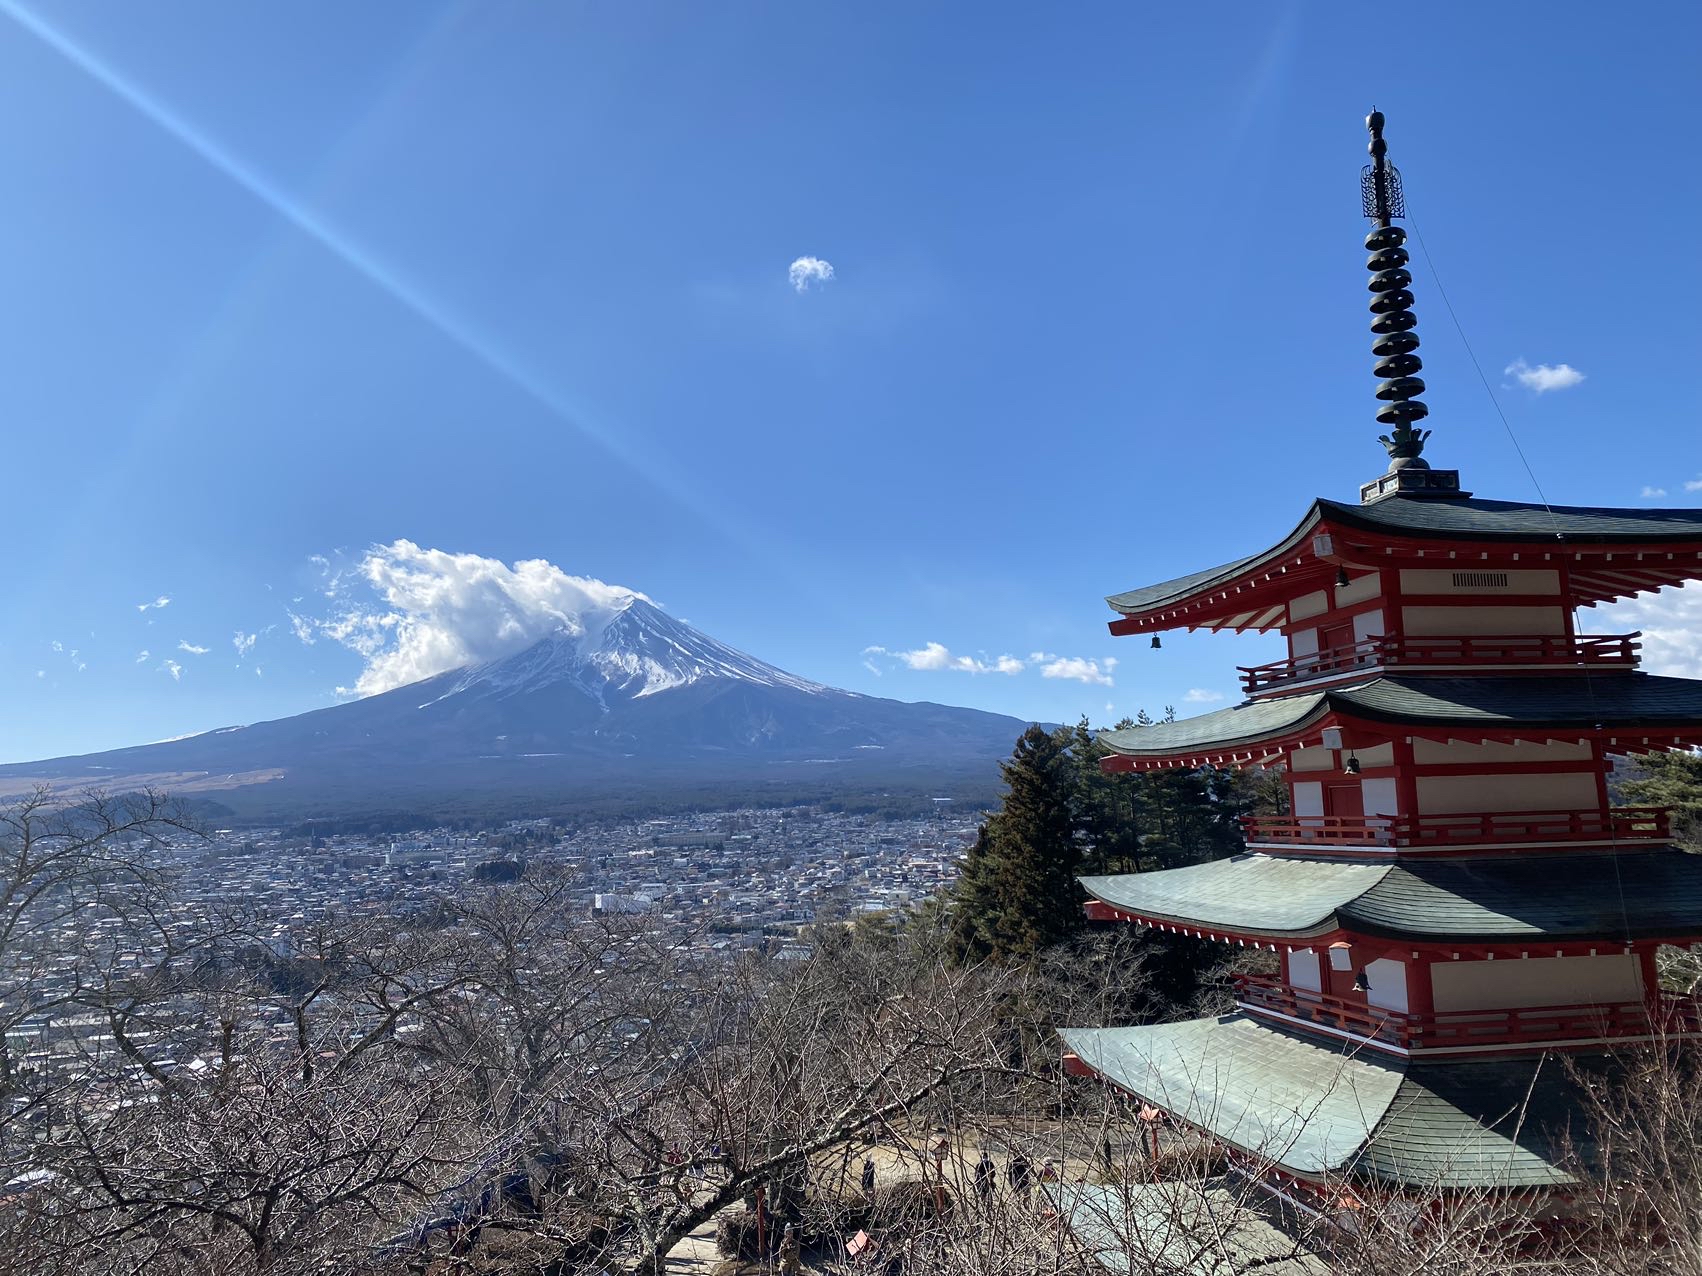 #旅途美景 完美的富士山之旅😎司机师傅付林林专业、热心、服务到位，整体感受超级赞，下次再会